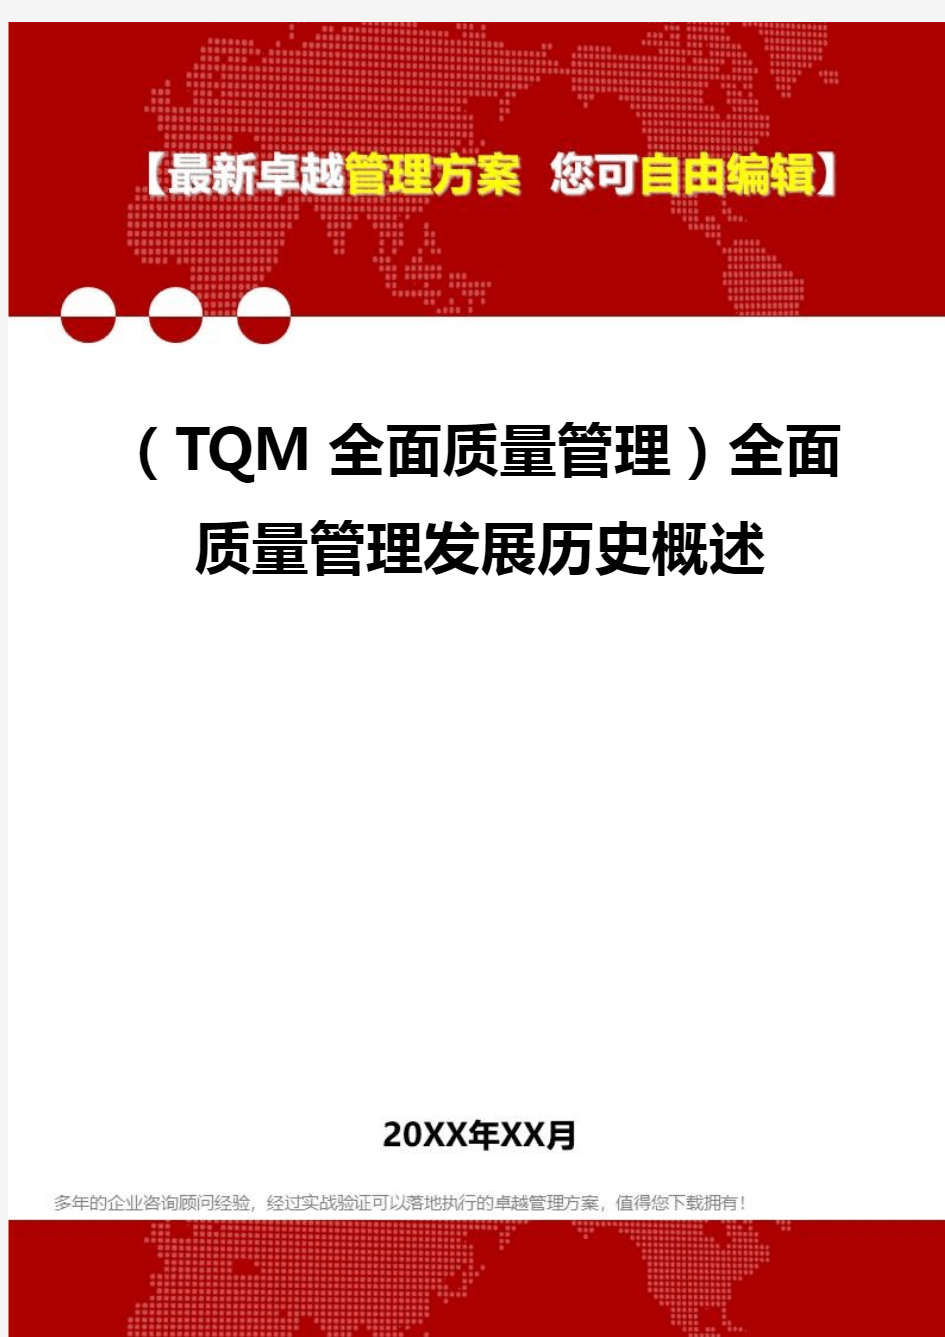 2020(TQM全面质量管理)全面质量管理发展历史概述